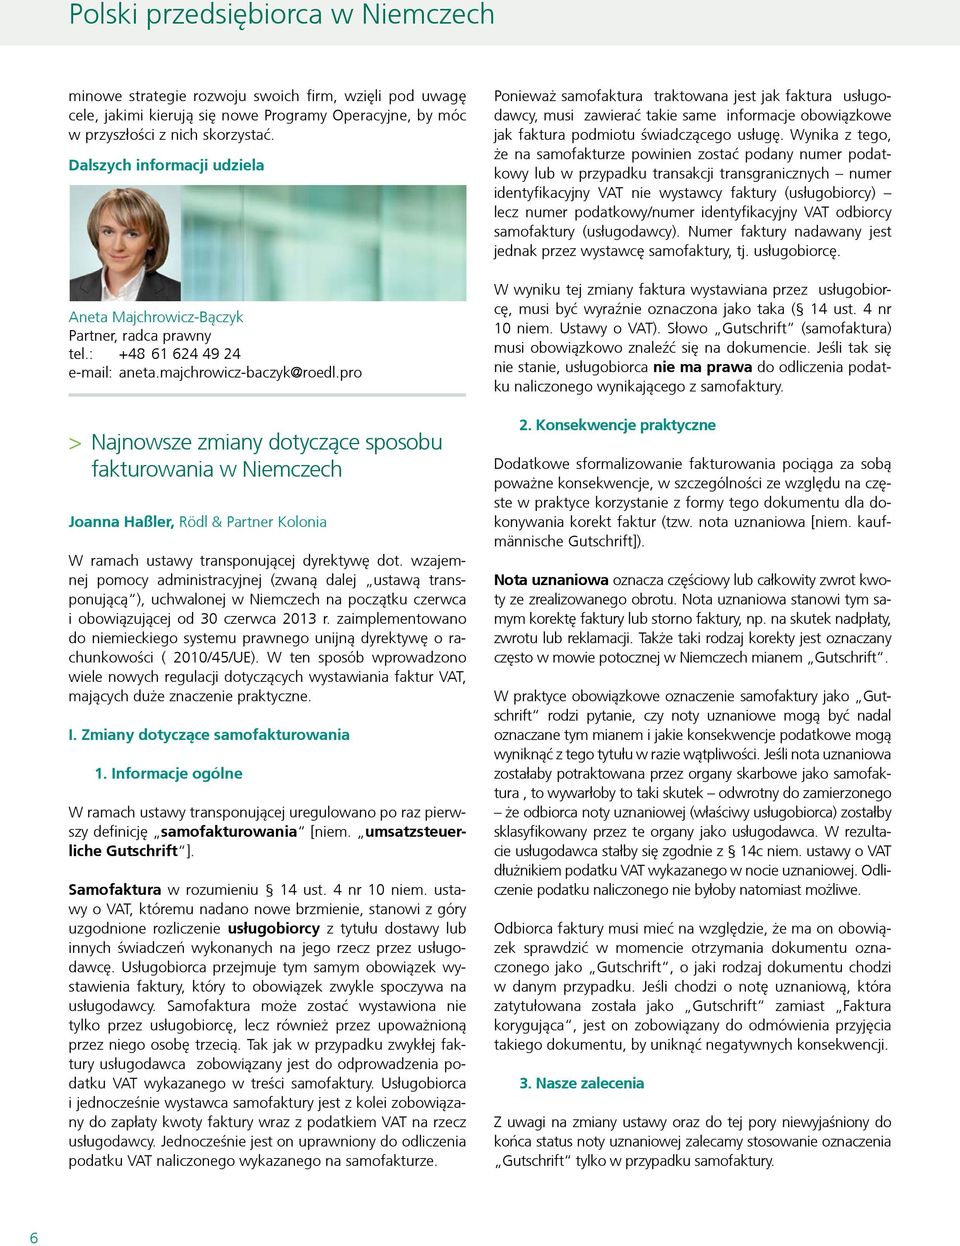 pro > > Najnowsze zmiany dotyczące sposobu fakturowania w Niemczech Joanna Haßler, Rödl & Partner Kolonia W ramach ustawy transponującej dyrektywę dot.